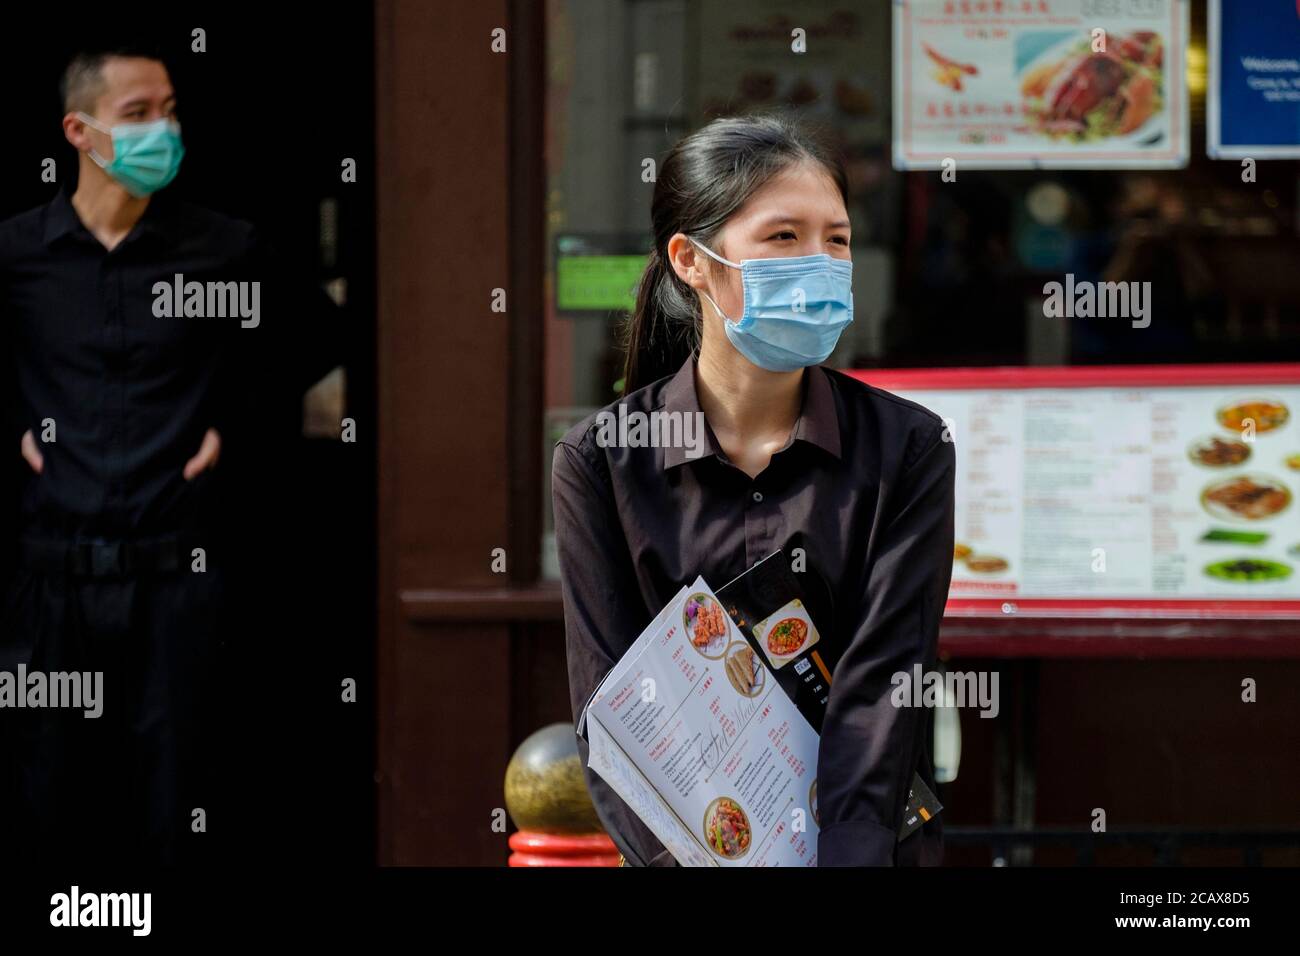 Das Personal im chinesischen Restaurant mit chirurgischen Gesichtsmasken erwartet die Gäste. Gerrard Street, Soho, London. Stockfoto